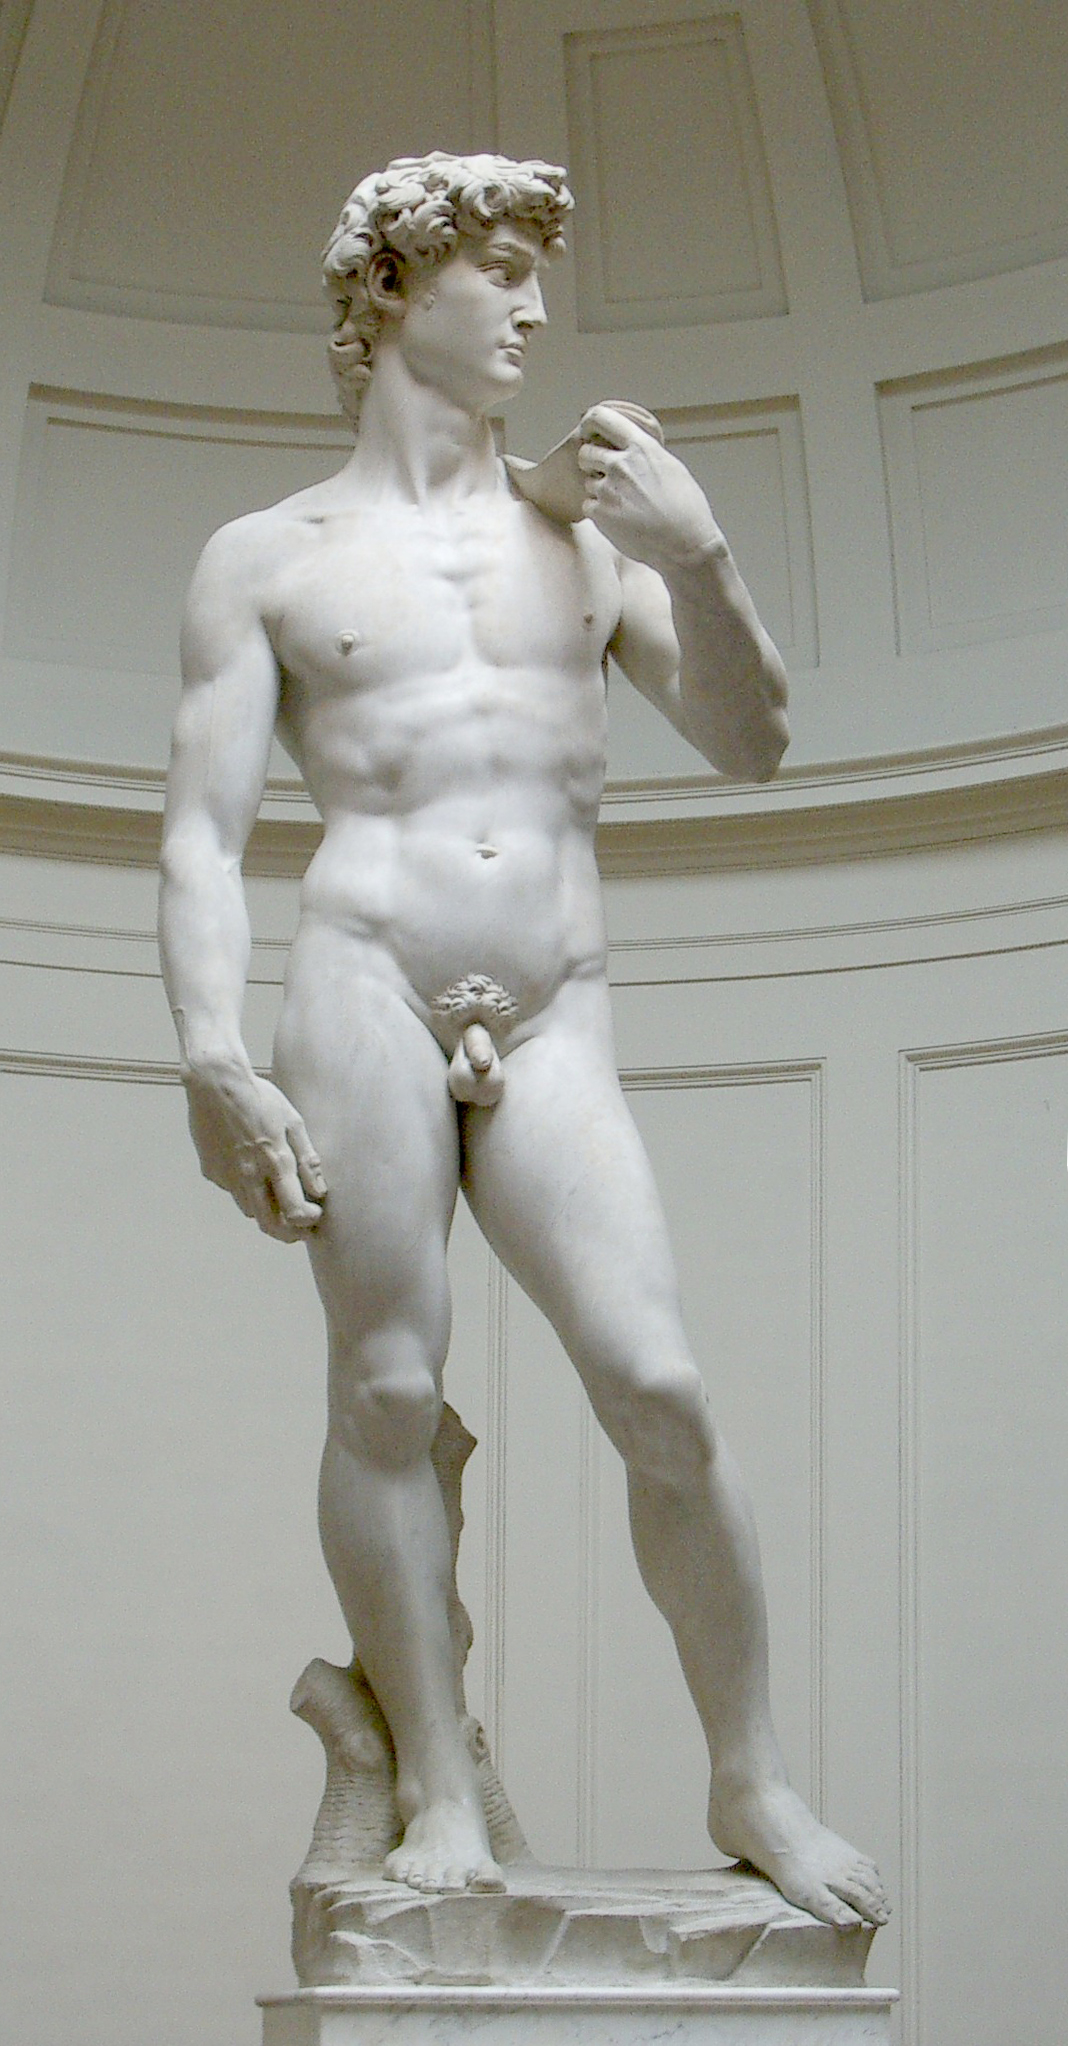 Nude (art) - Wikipedia